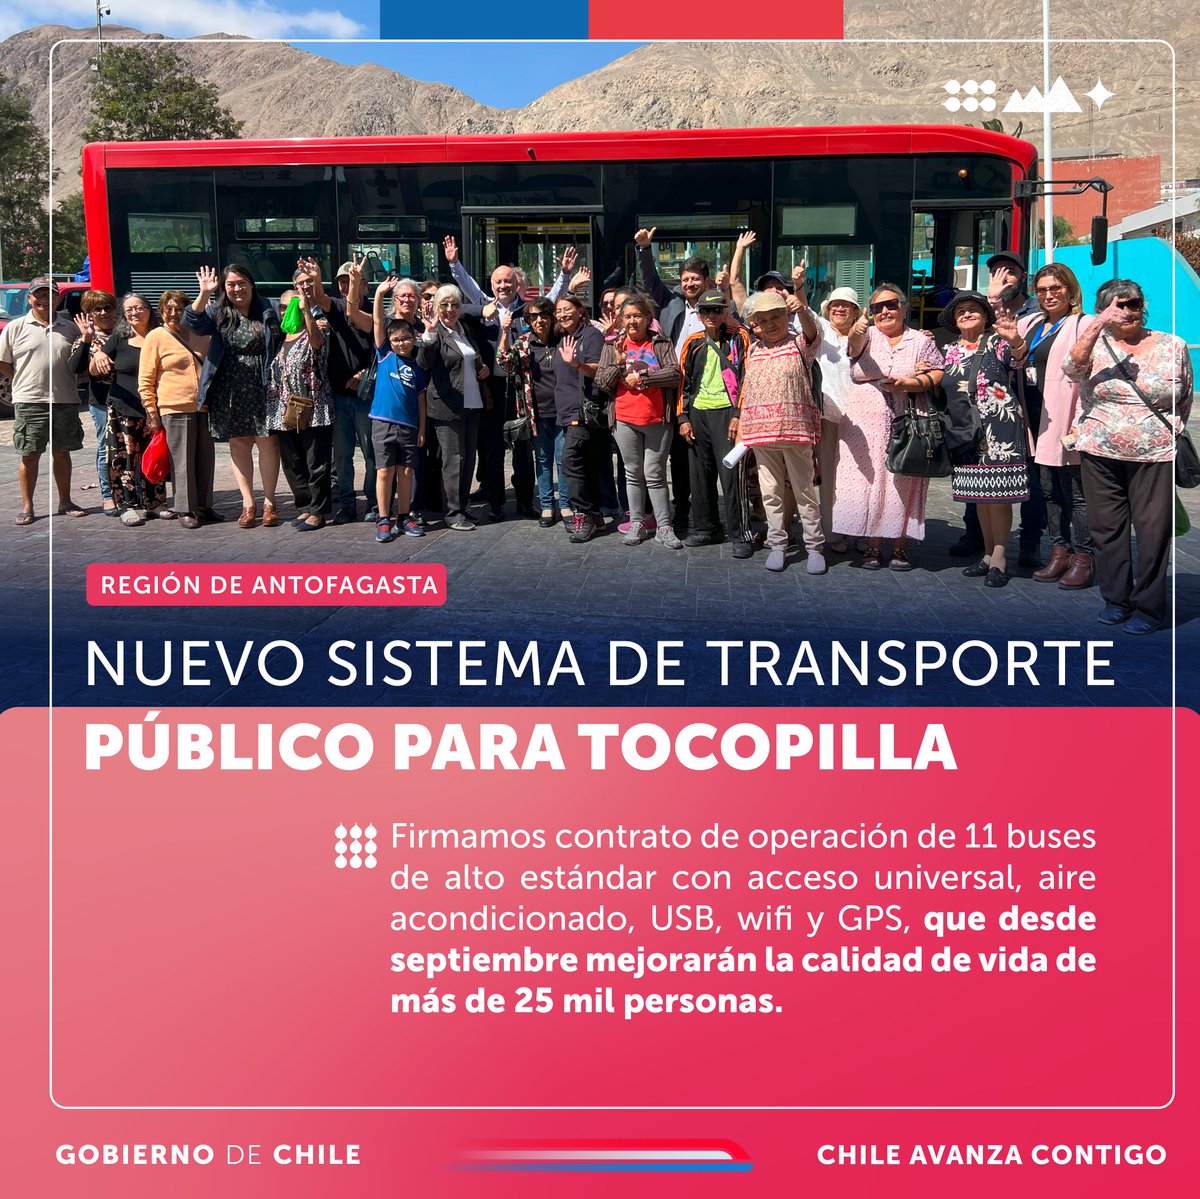 El subsecretario @dazajorge01, junto a @DPPTocopilla, Rachel Cortés, y el seremitt Enrique Viveros, firmó el contrato de operación de los 11 buses de alto estándar que comenzarán a funcionar a partir de septiembre en Tocopilla. El servicio será gratuito para adultos mayores.